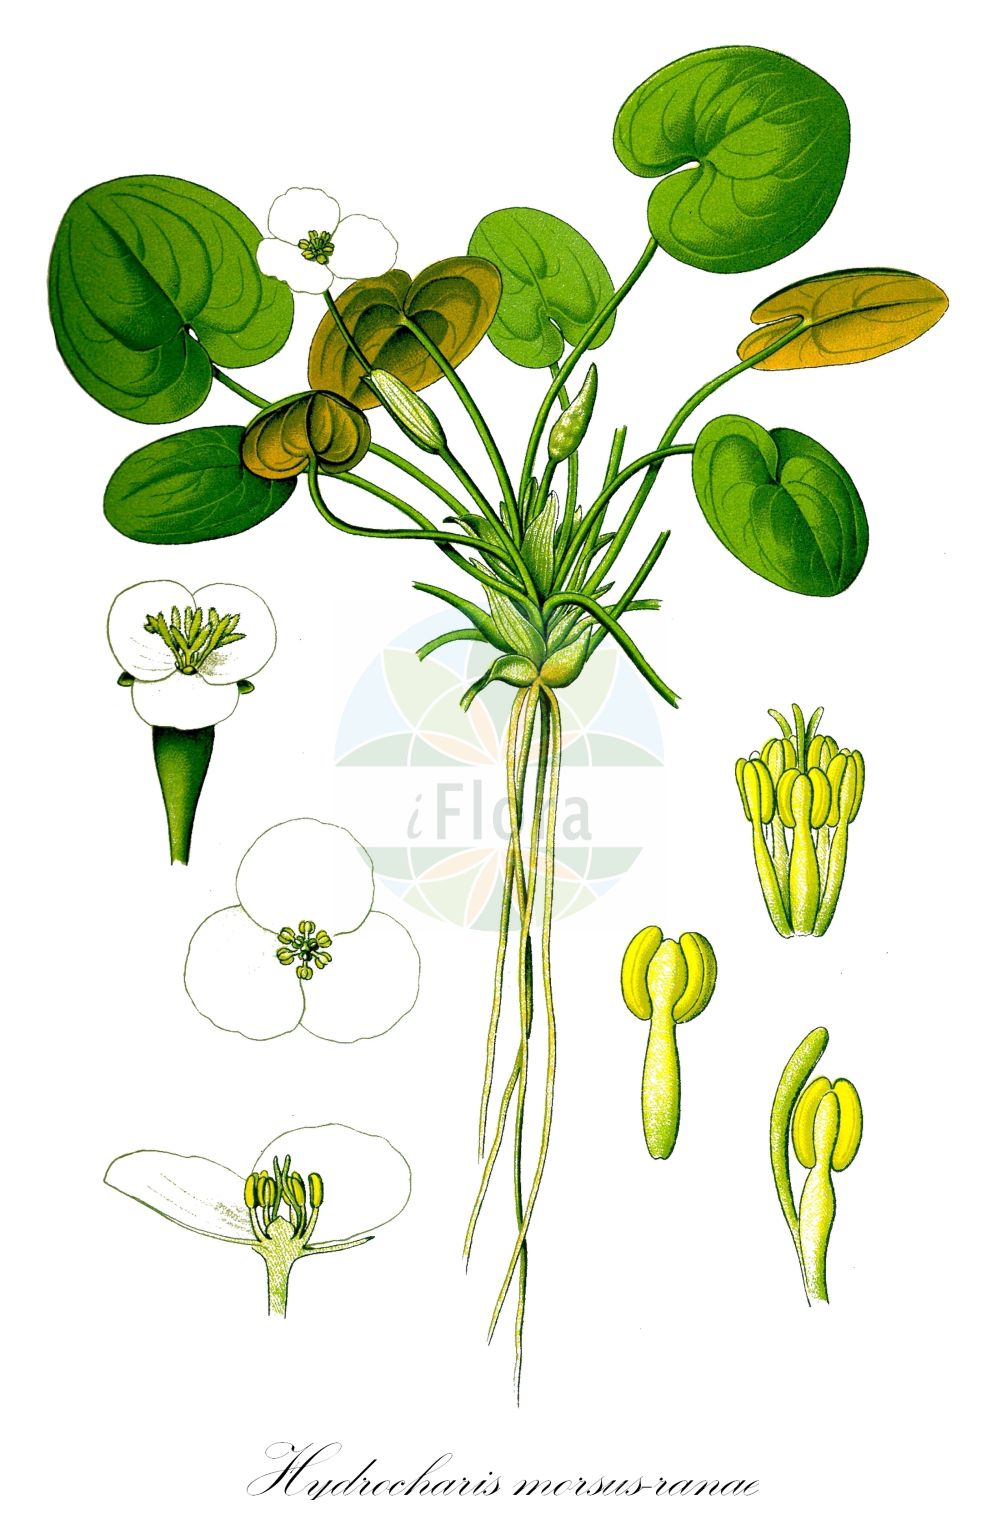 Historische Abbildung von Hydrocharis morsus-ranae (Europäischer Froschbiß - Frogbit). Das Bild zeigt Blatt, Bluete, Frucht und Same. ---- Historical Drawing of Hydrocharis morsus-ranae (Europäischer Froschbiß - Frogbit). The image is showing leaf, flower, fruit and seed.(Hydrocharis morsus-ranae,Europäischer Froschbiß,Frogbit,Hydrocharis morsus-ranae,Europaeischer Froschbiss,Froschbiss,Frogbit,European Frogbit,Common Frogbit,Hydrocharis,Froschbiß,Frogbit,Hydrocharitaceae,Froschbissgewächse,Frogbit family,Blatt,Bluete,Frucht,Same,leaf,flower,fruit,seed,Thomé (1885))